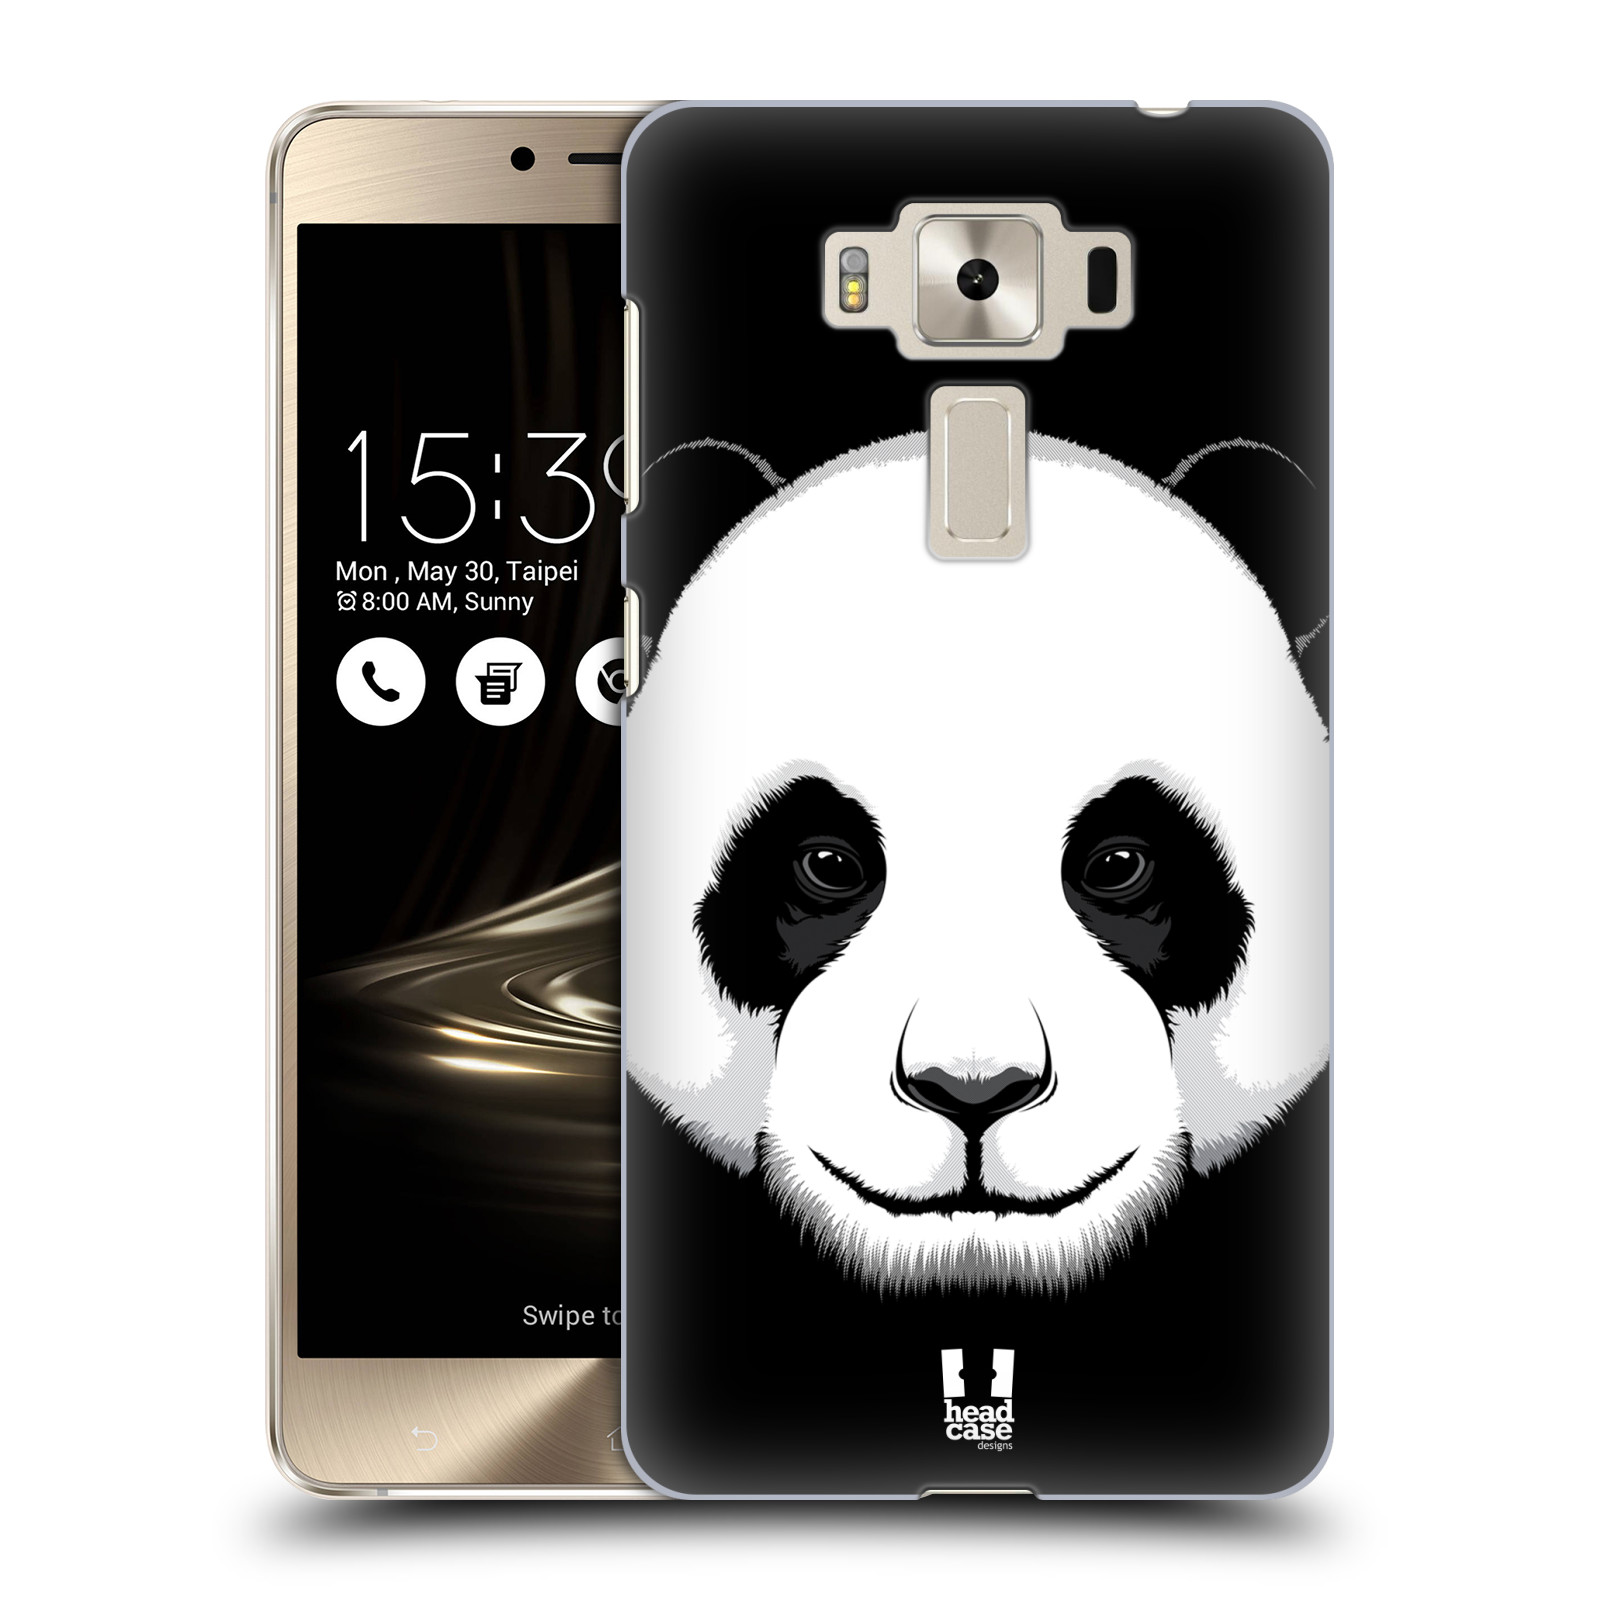 HEAD CASE plastový obal na mobil Asus Zenfone 3 DELUXE ZS550KL vzor Zvíře kreslená tvář panda